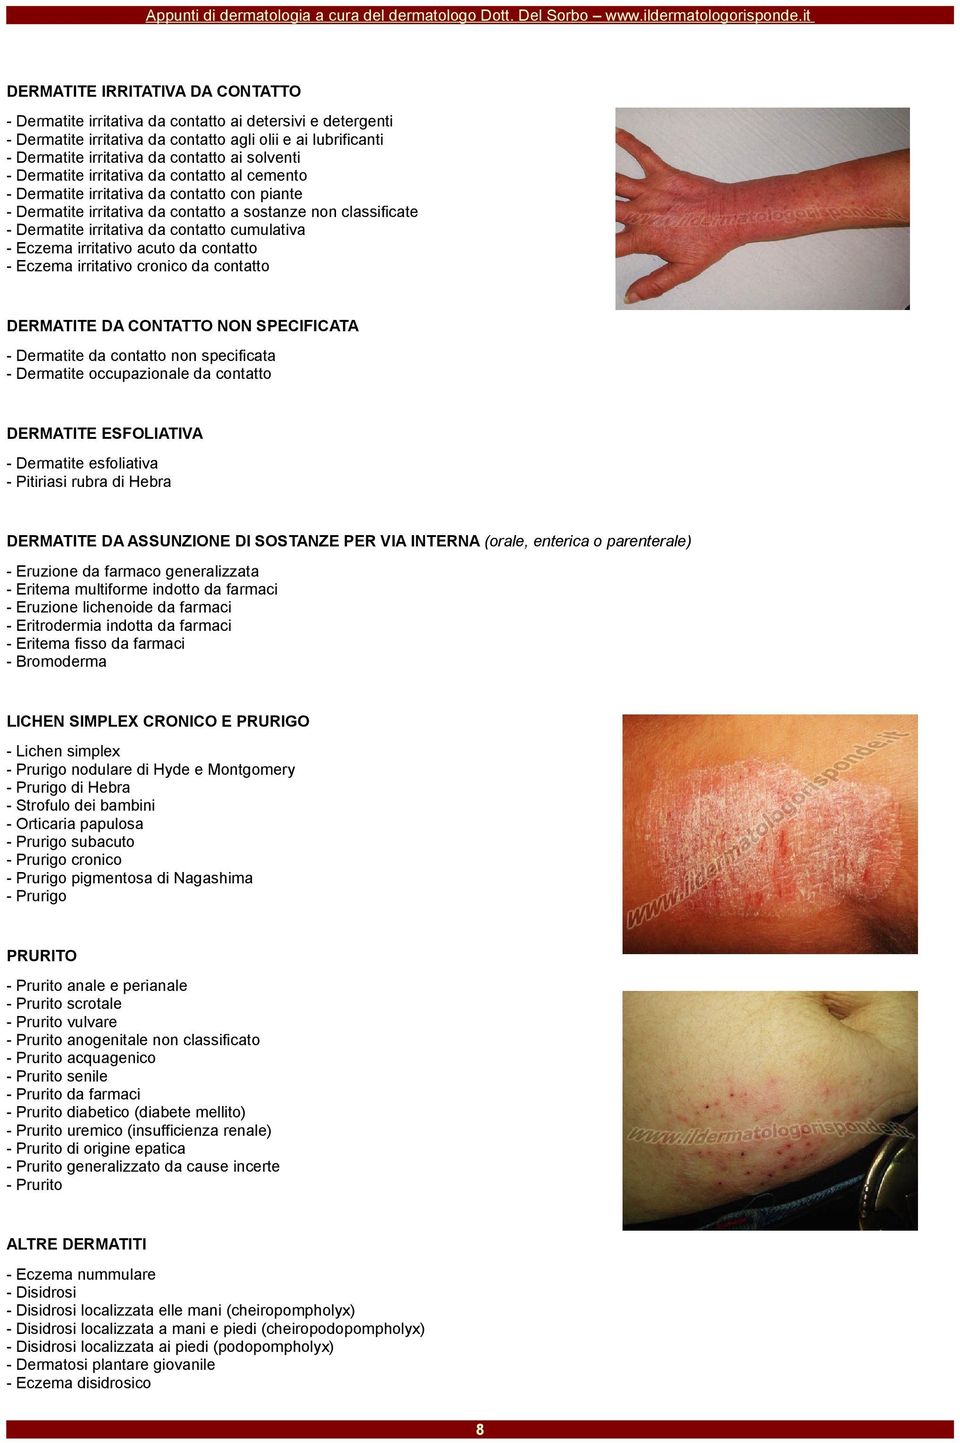 cumulativa - Eczema irritativo acuto da contatto - Eczema irritativo cronico da contatto DERMATITE DA CONTATTO NON SPECIFICATA - Dermatite da contatto non specificata - Dermatite occupazionale da